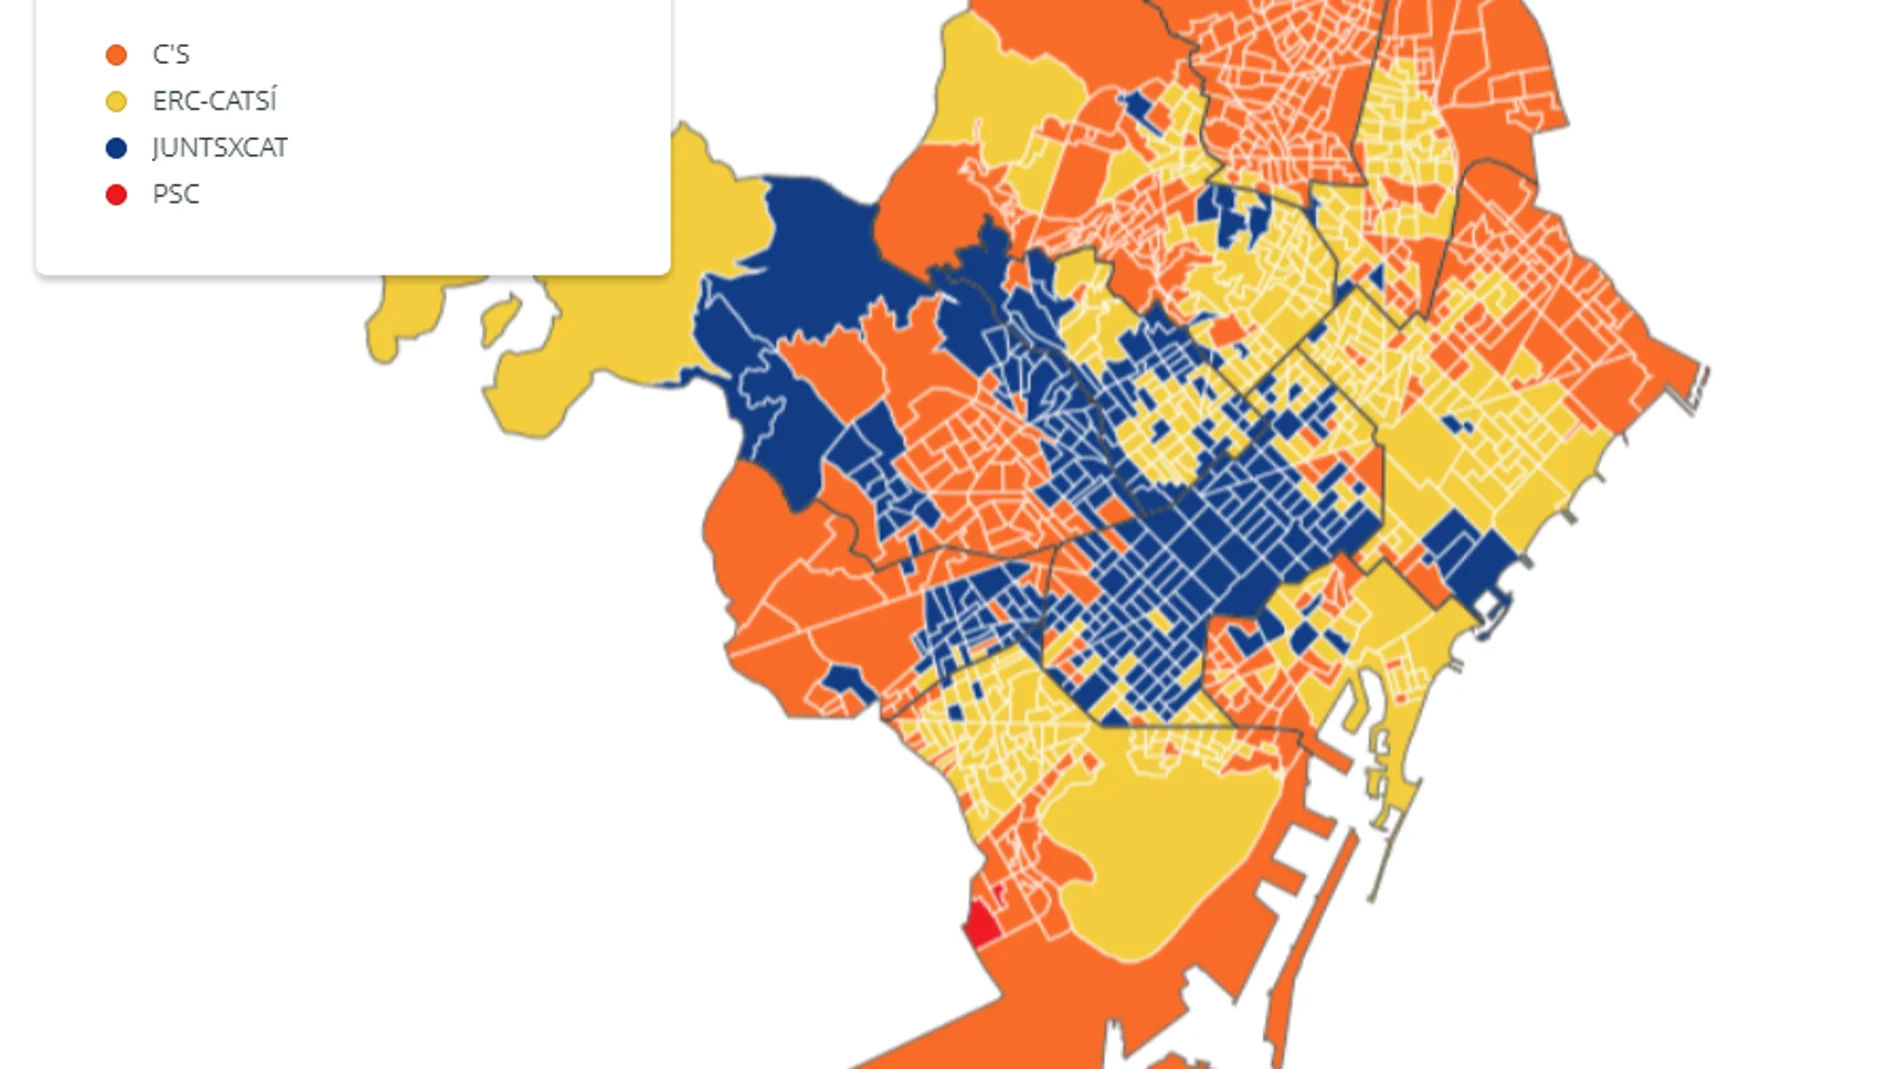 Mapa de Barcelona según los resultados del 21D